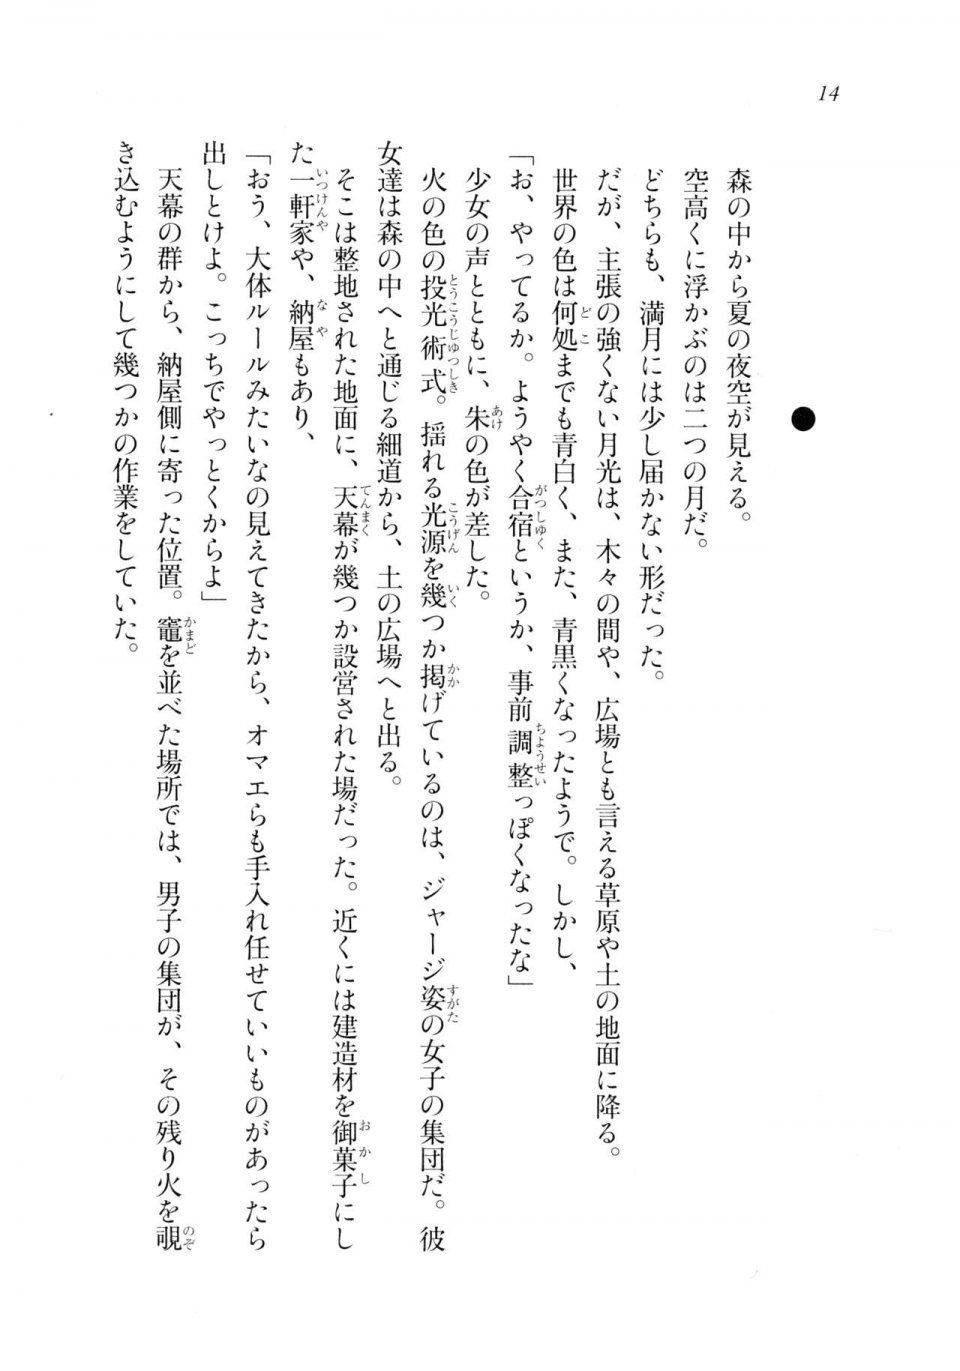 Kyoukai Senjou no Horizon LN Sidestory Vol 2 - Photo #13